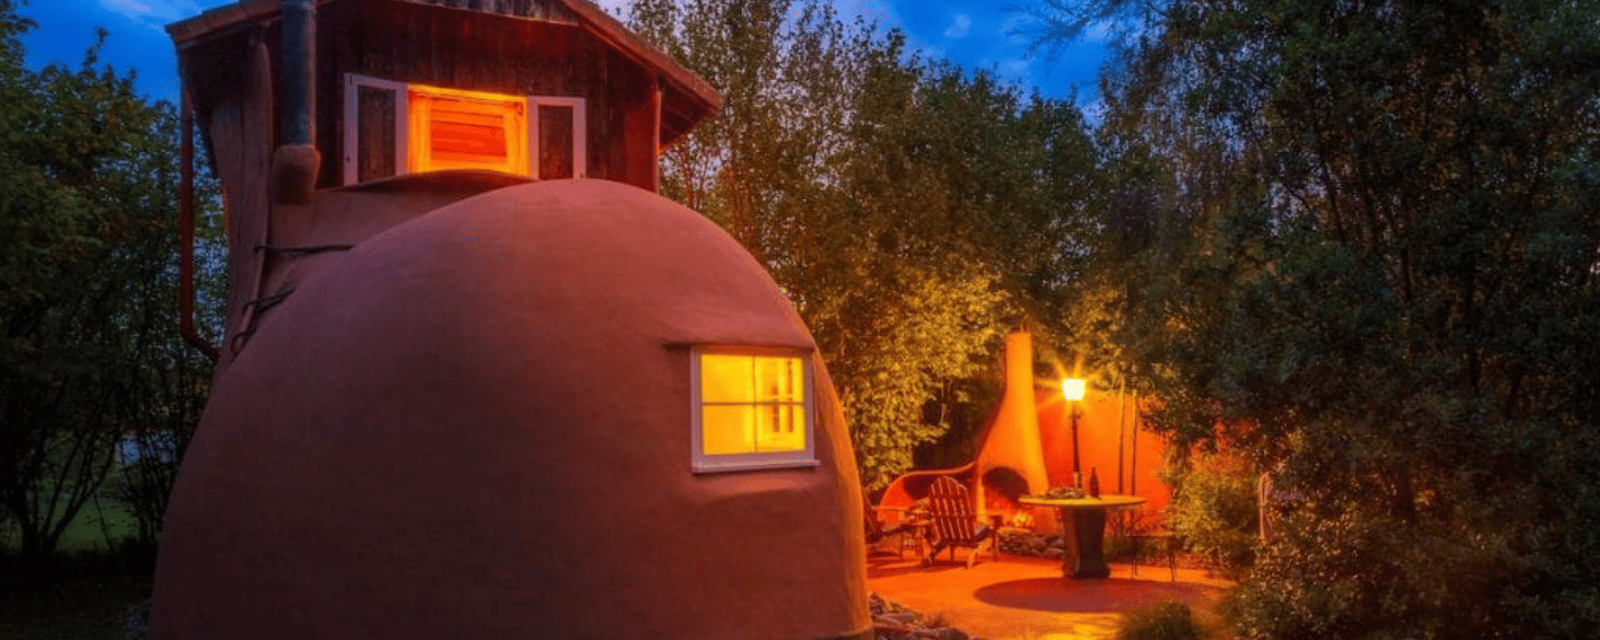 Cette maison en forme de botte est à louer sur Airbnb et son intérieur vous charmera